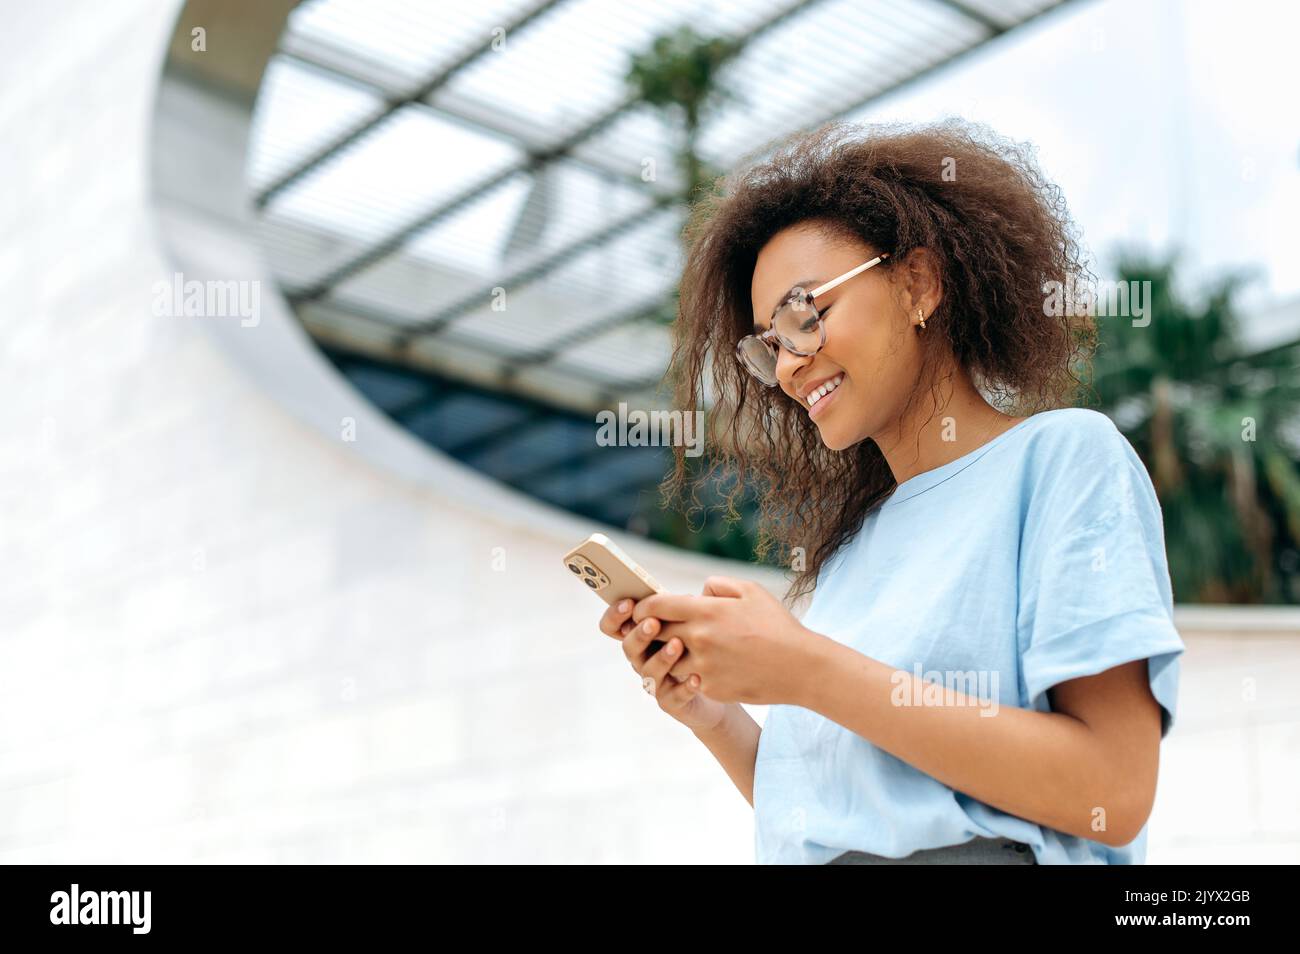 Online-Chat. Positive afroamerikanische junge Frau mit lockigen Haaren, stilvoll gekleidet, mit ihrem Smartphone im Freien stehend, Messaging mit Freunden in sozialen Netzwerken, beantwortet E-Mails und lächelt Stockfoto